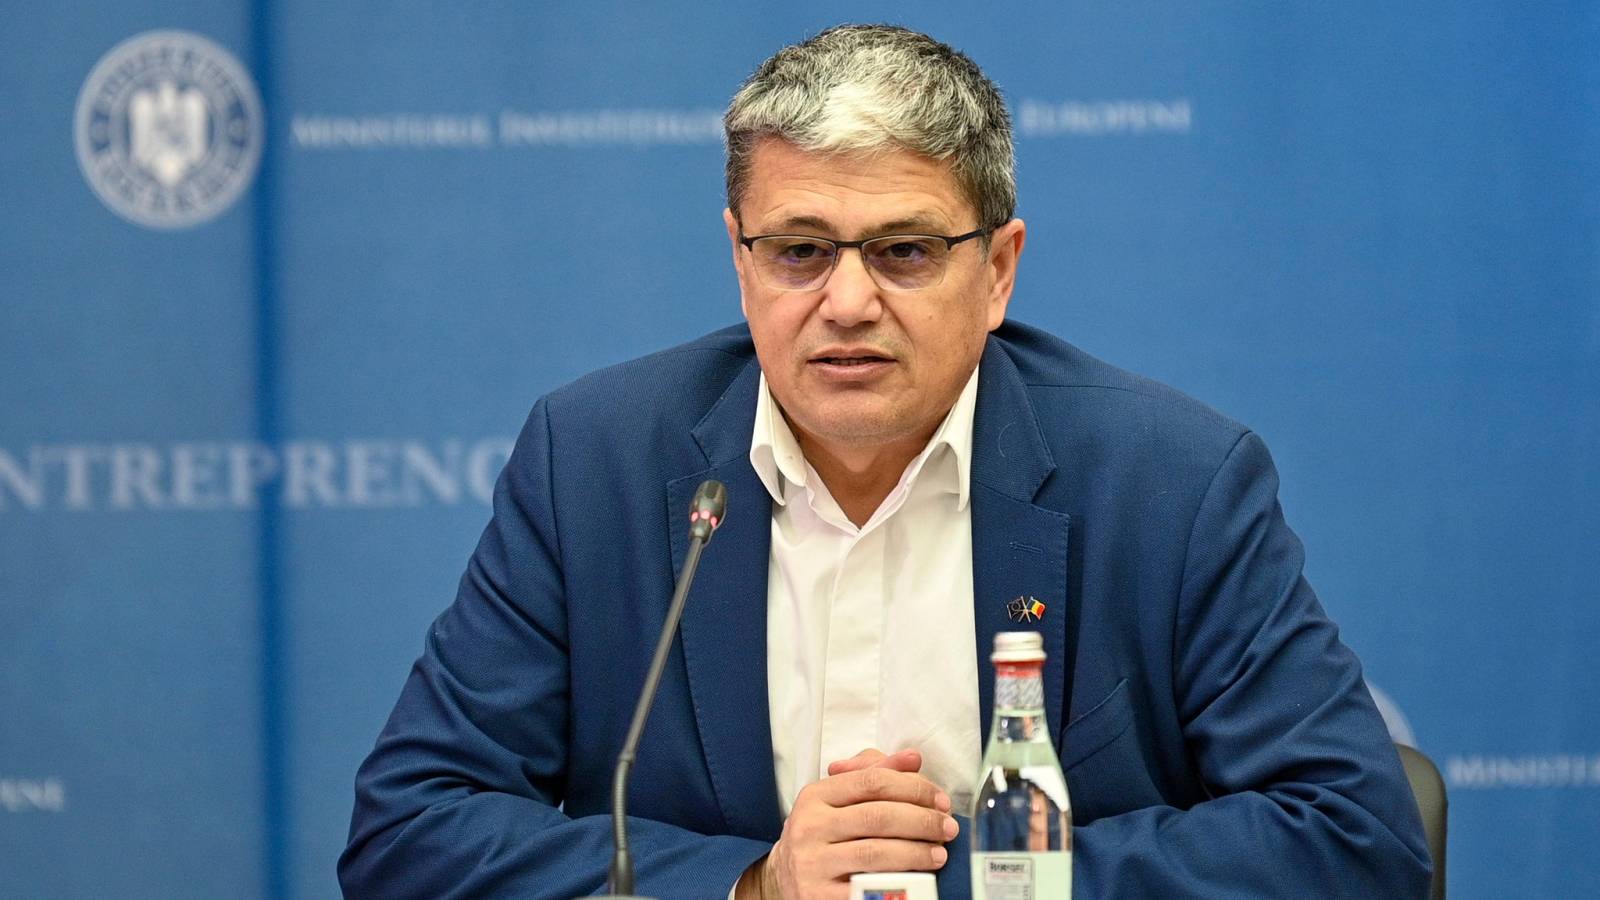 Marcel Bolos Confirma Noi Decizii IMPORTANTE Romania Anuntul Oficial Ministrului PSD